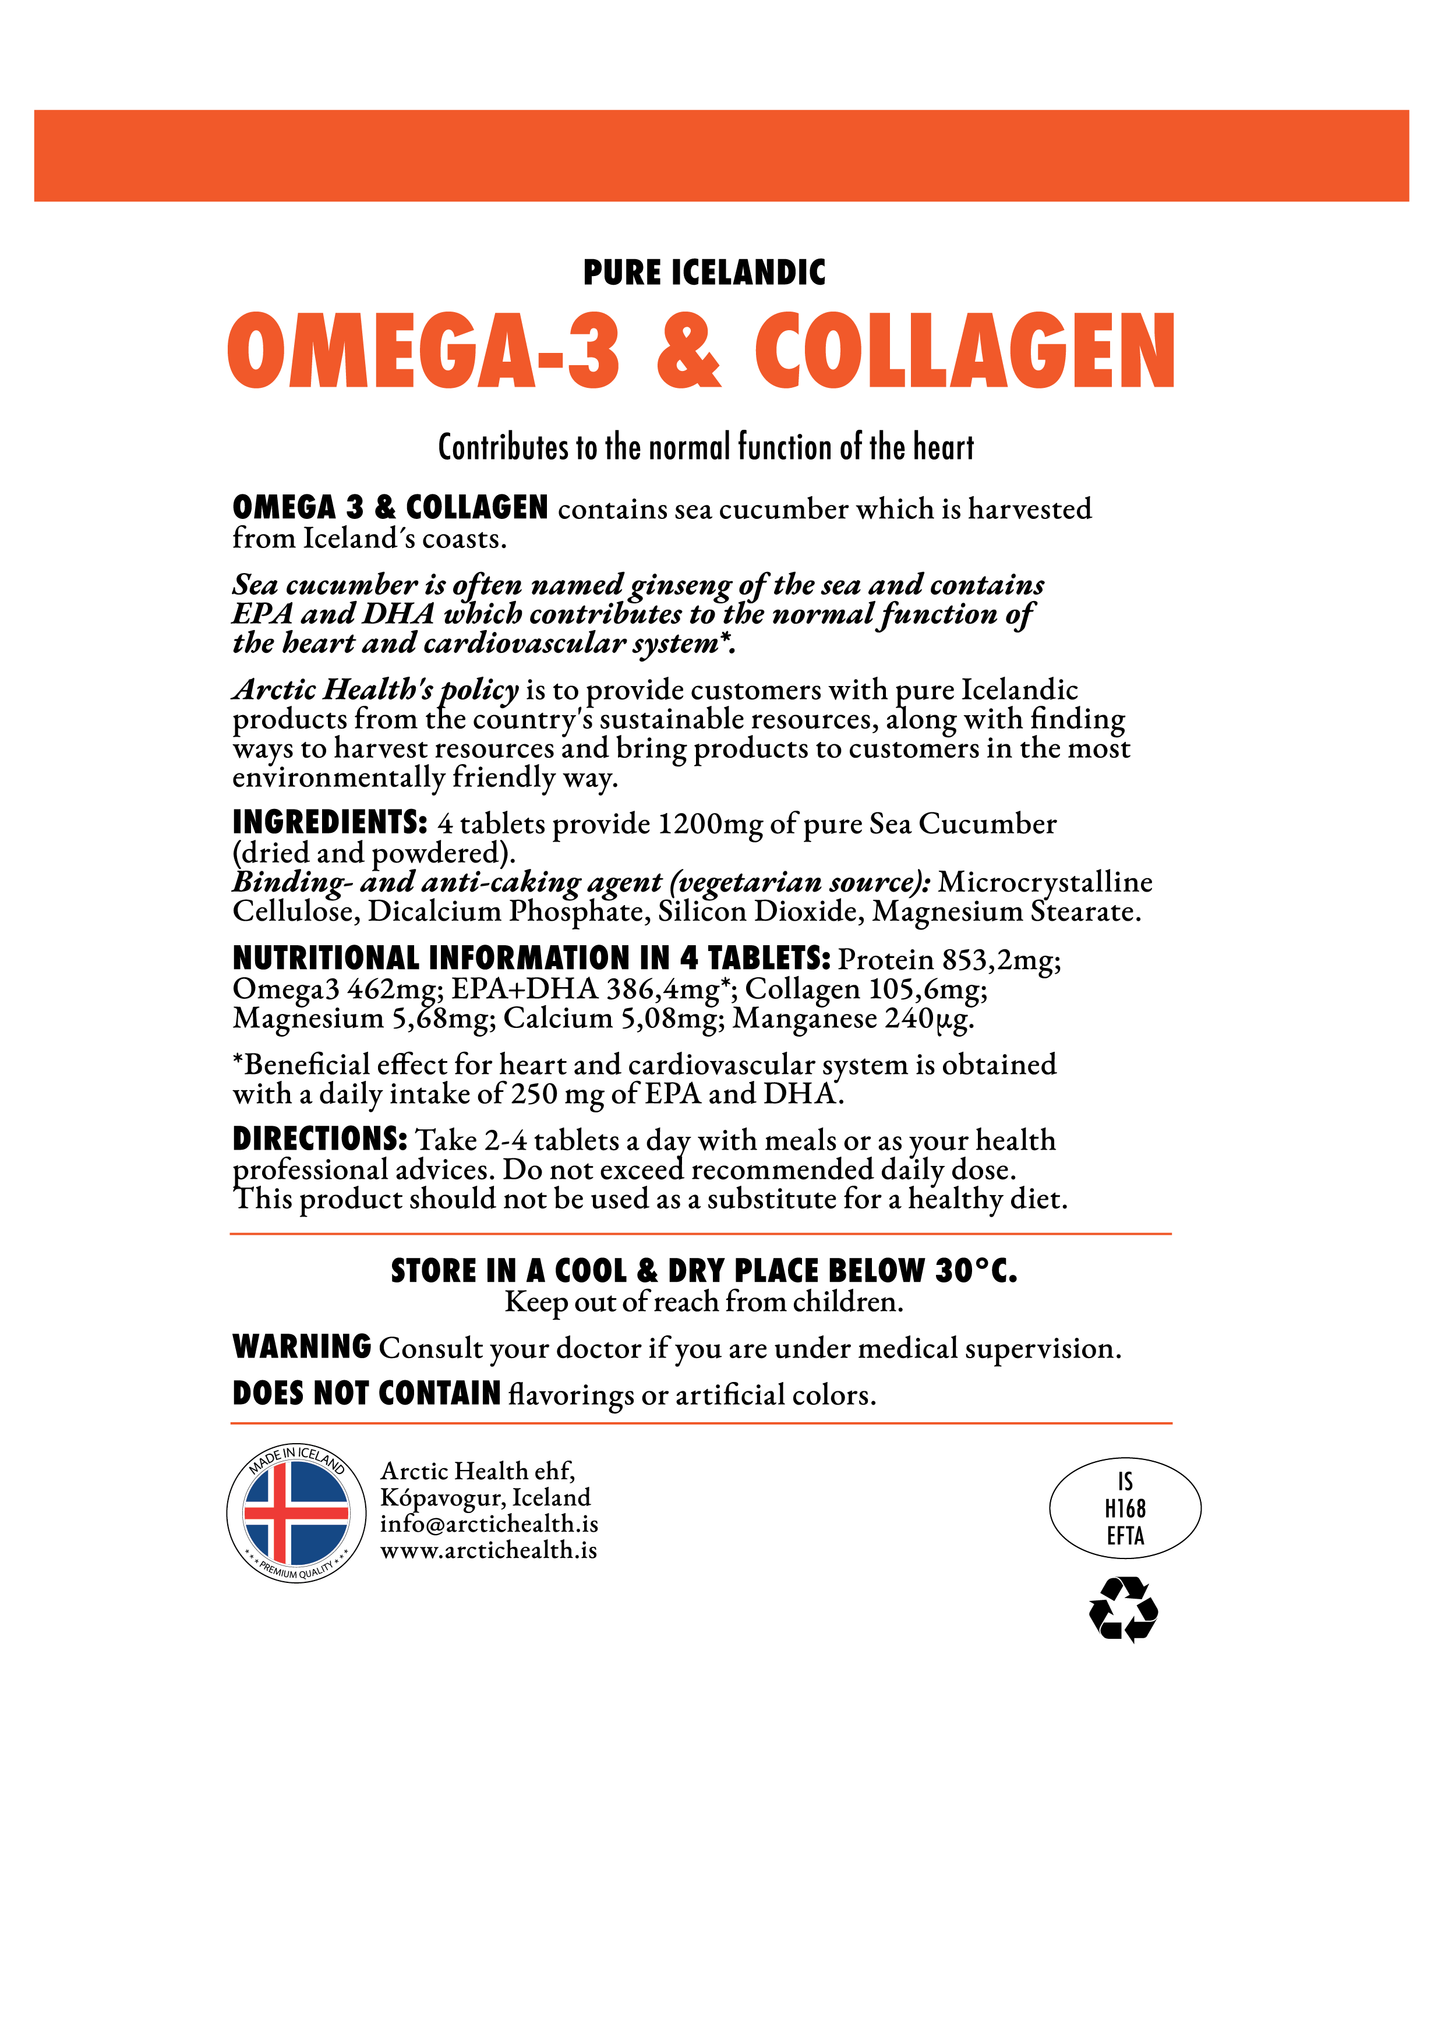 OMEGA-3 COLLAGEN